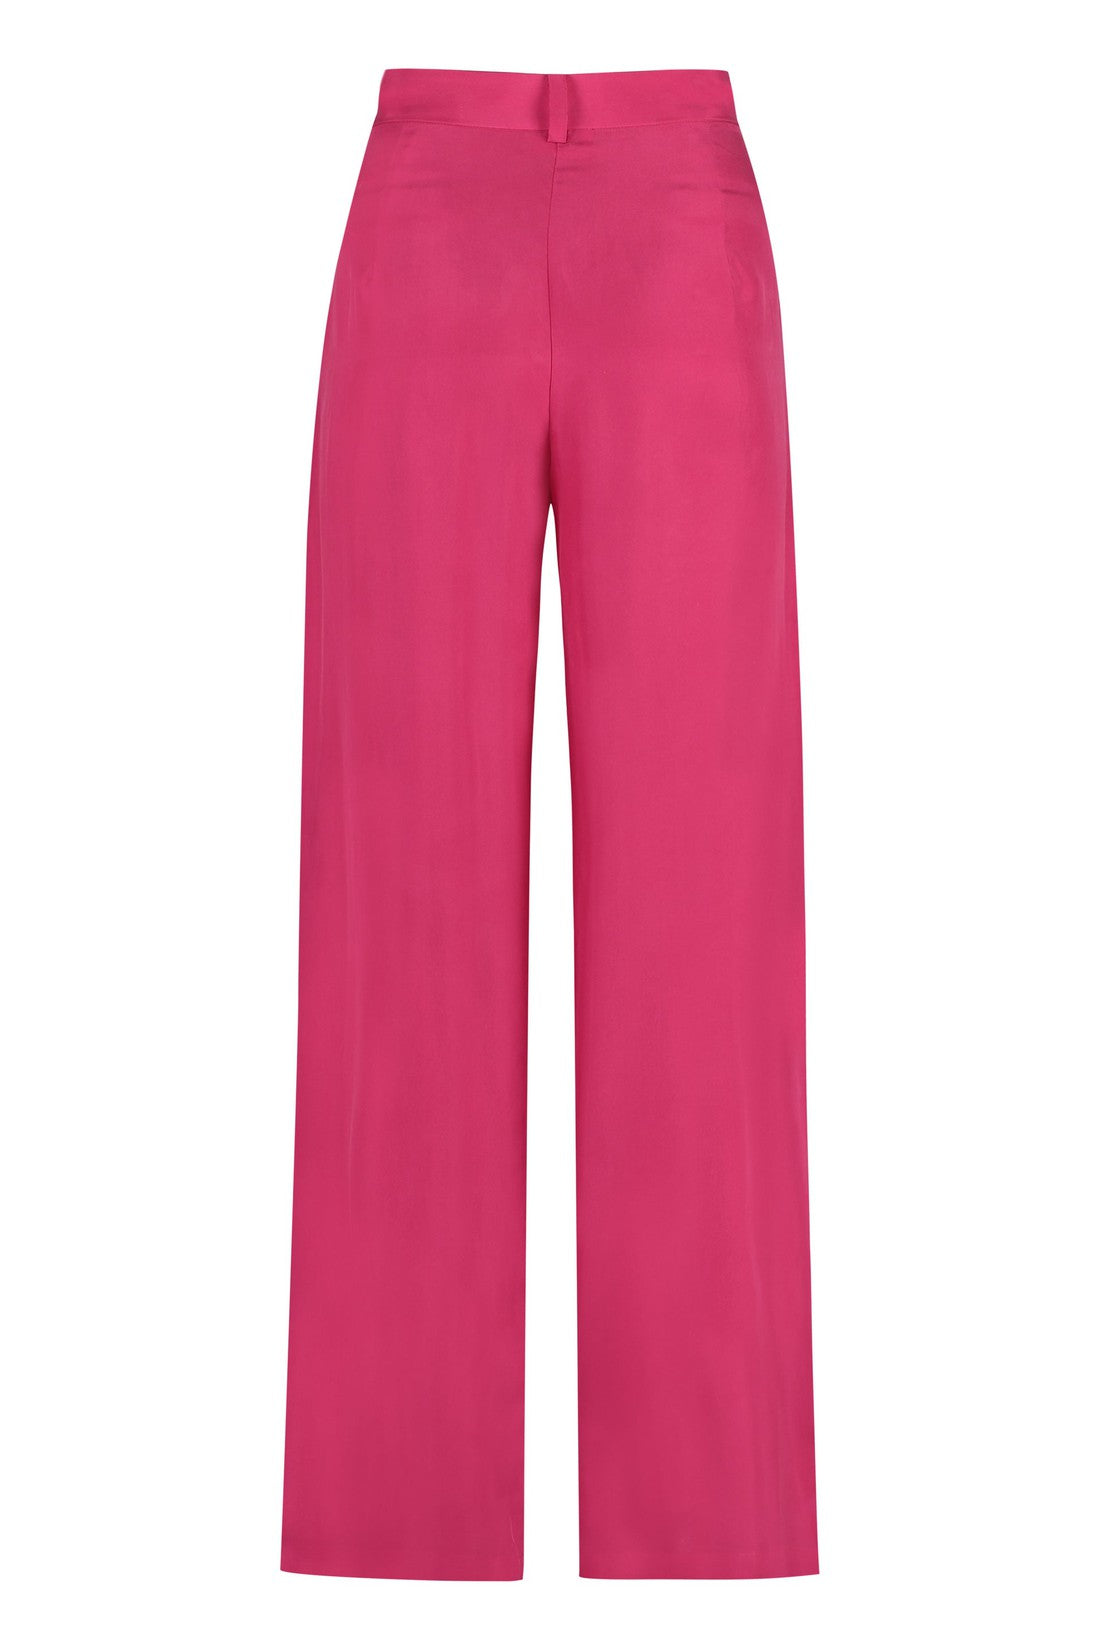 Parosh-OUTLET-SALE-Silk trousers-ARCHIVIST